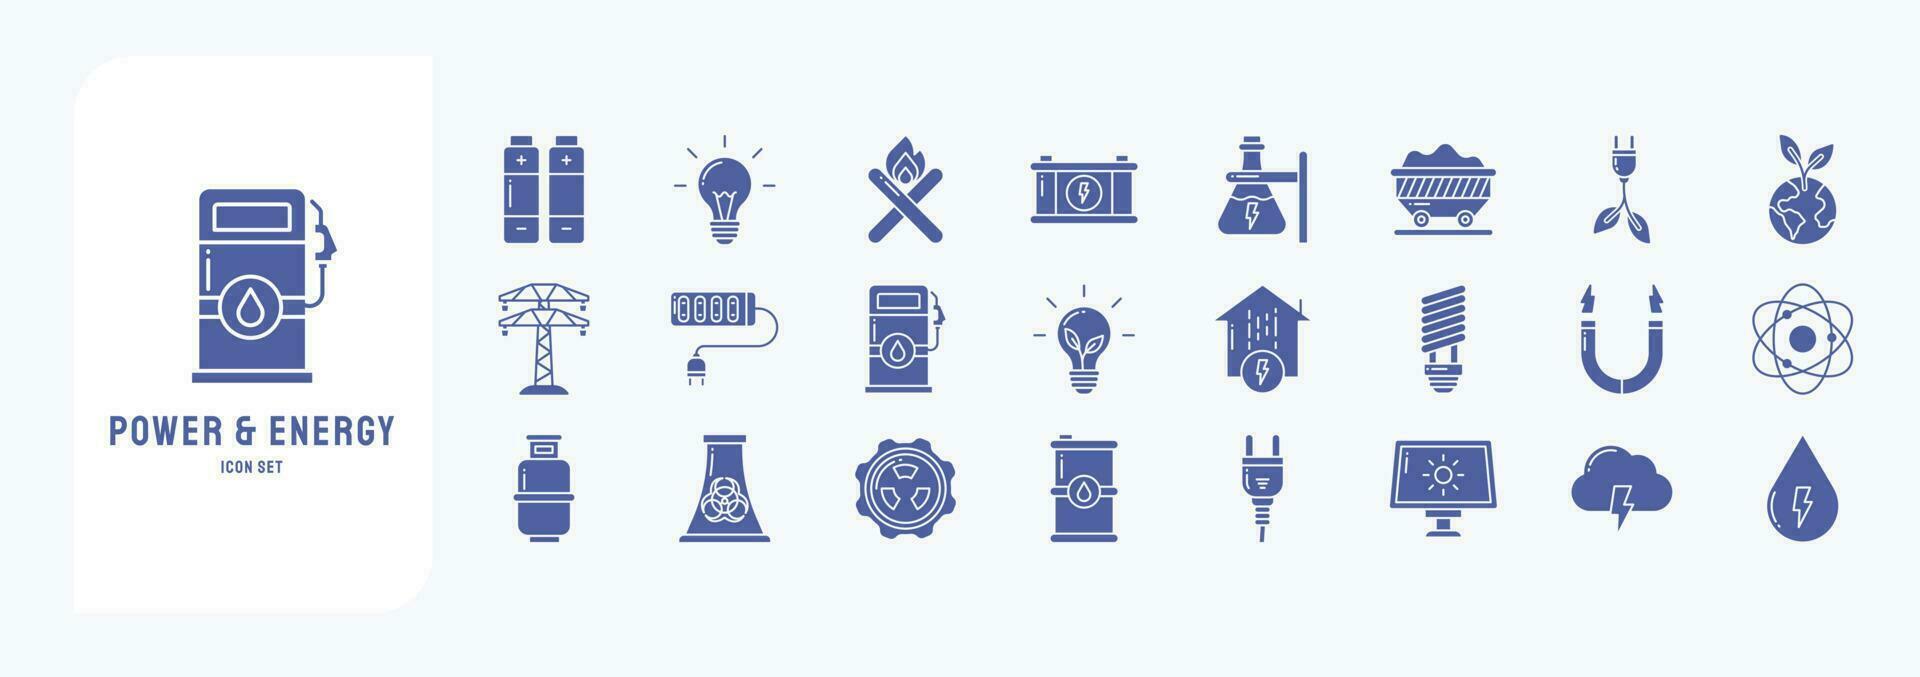 colección de íconos relacionado a poder y energía, incluso íconos me gusta batería, bulbo, eléctrico fuerza, ecología y más vector